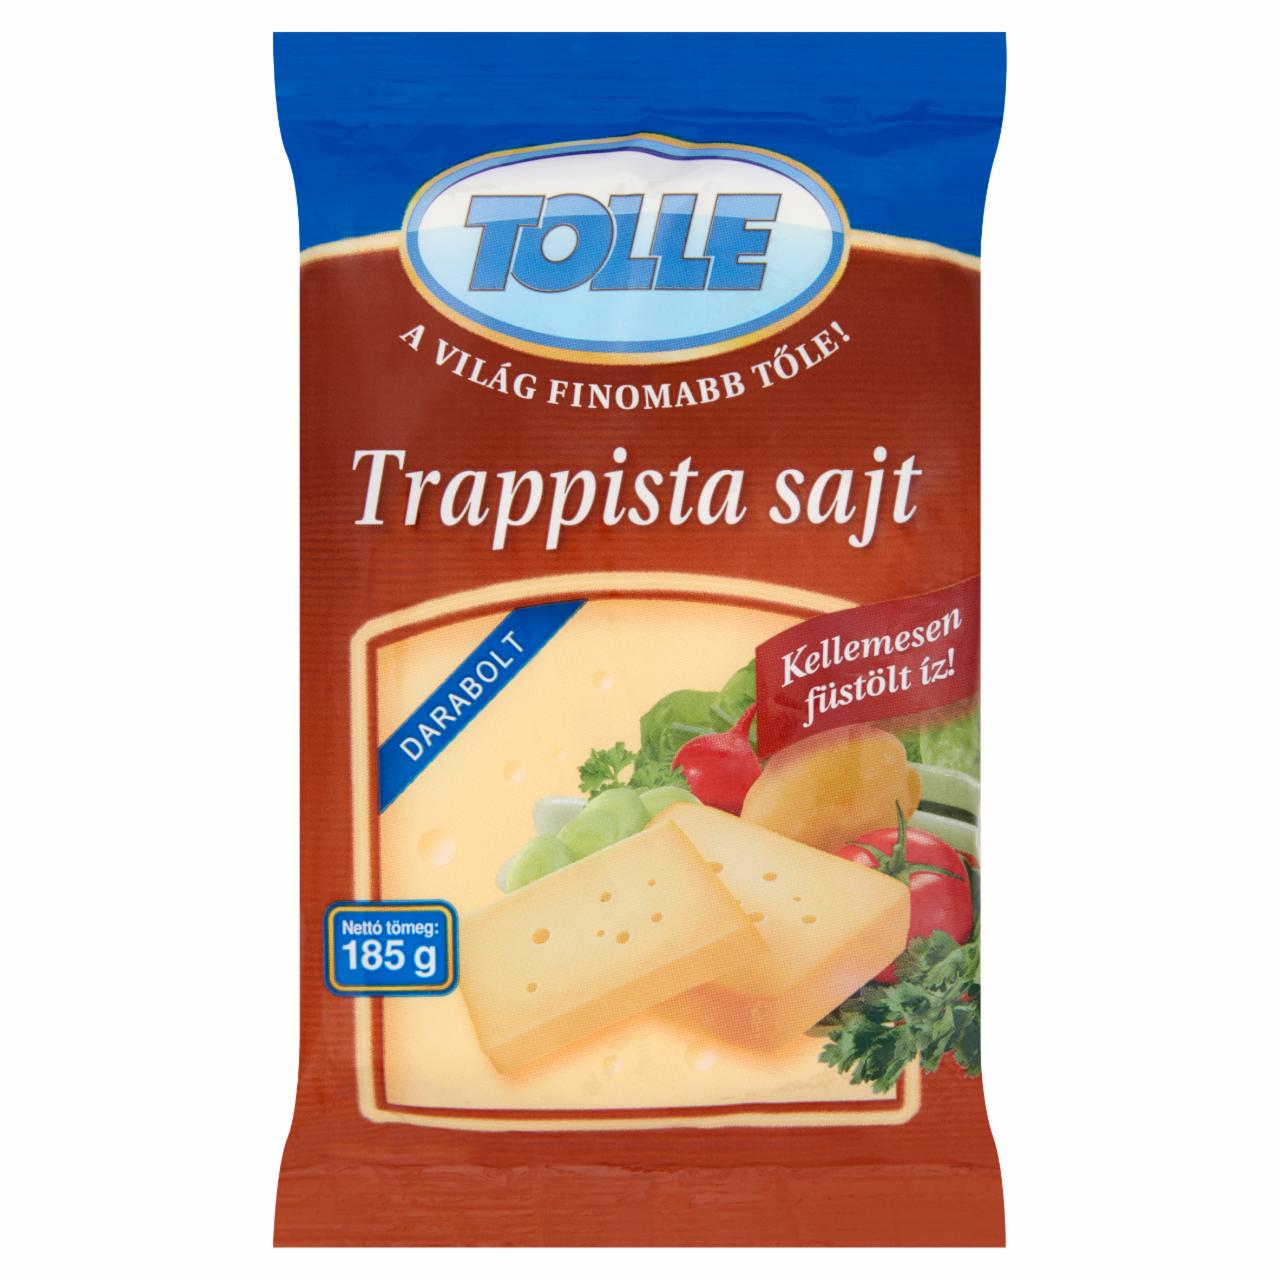 Képek - Tolle füstölt darabolt trappista sajt 185 g